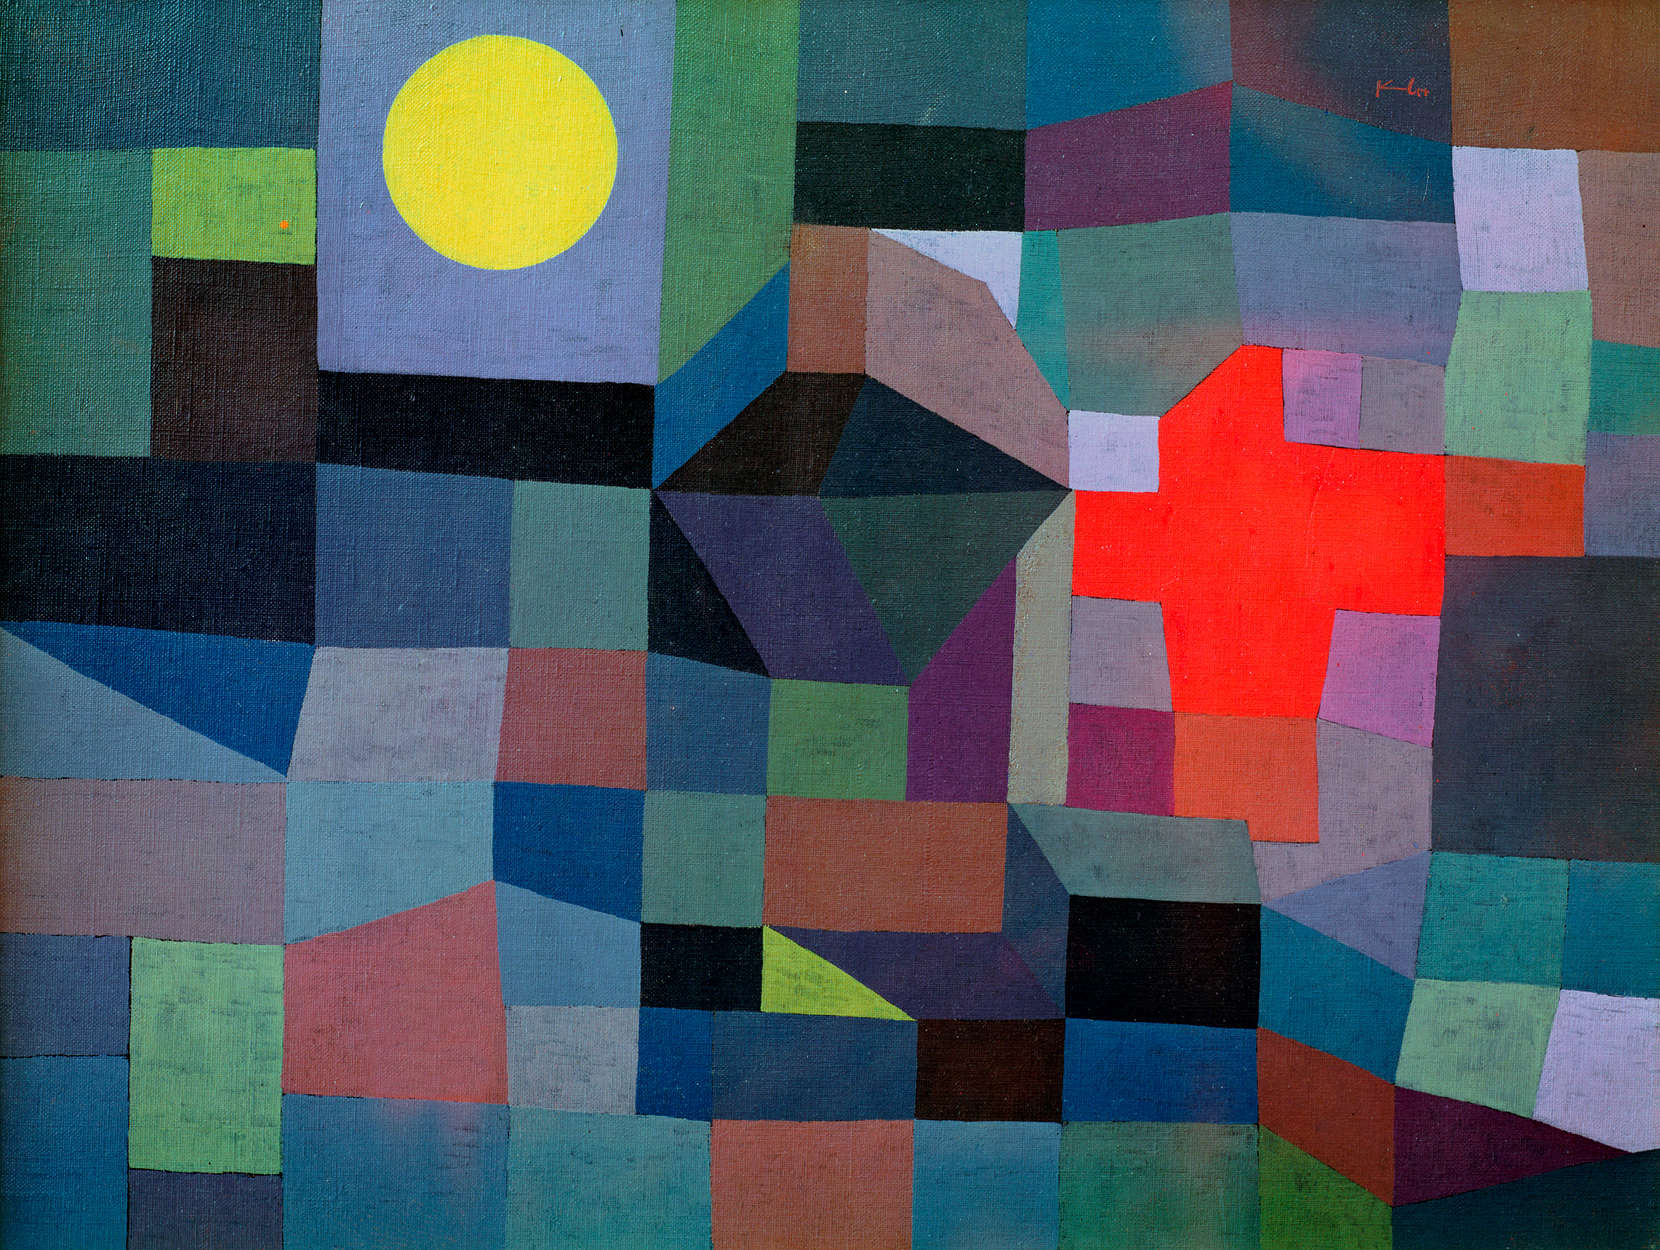             Papier peint panoramique "Feu à la pleine lune" de Paul Klee
        